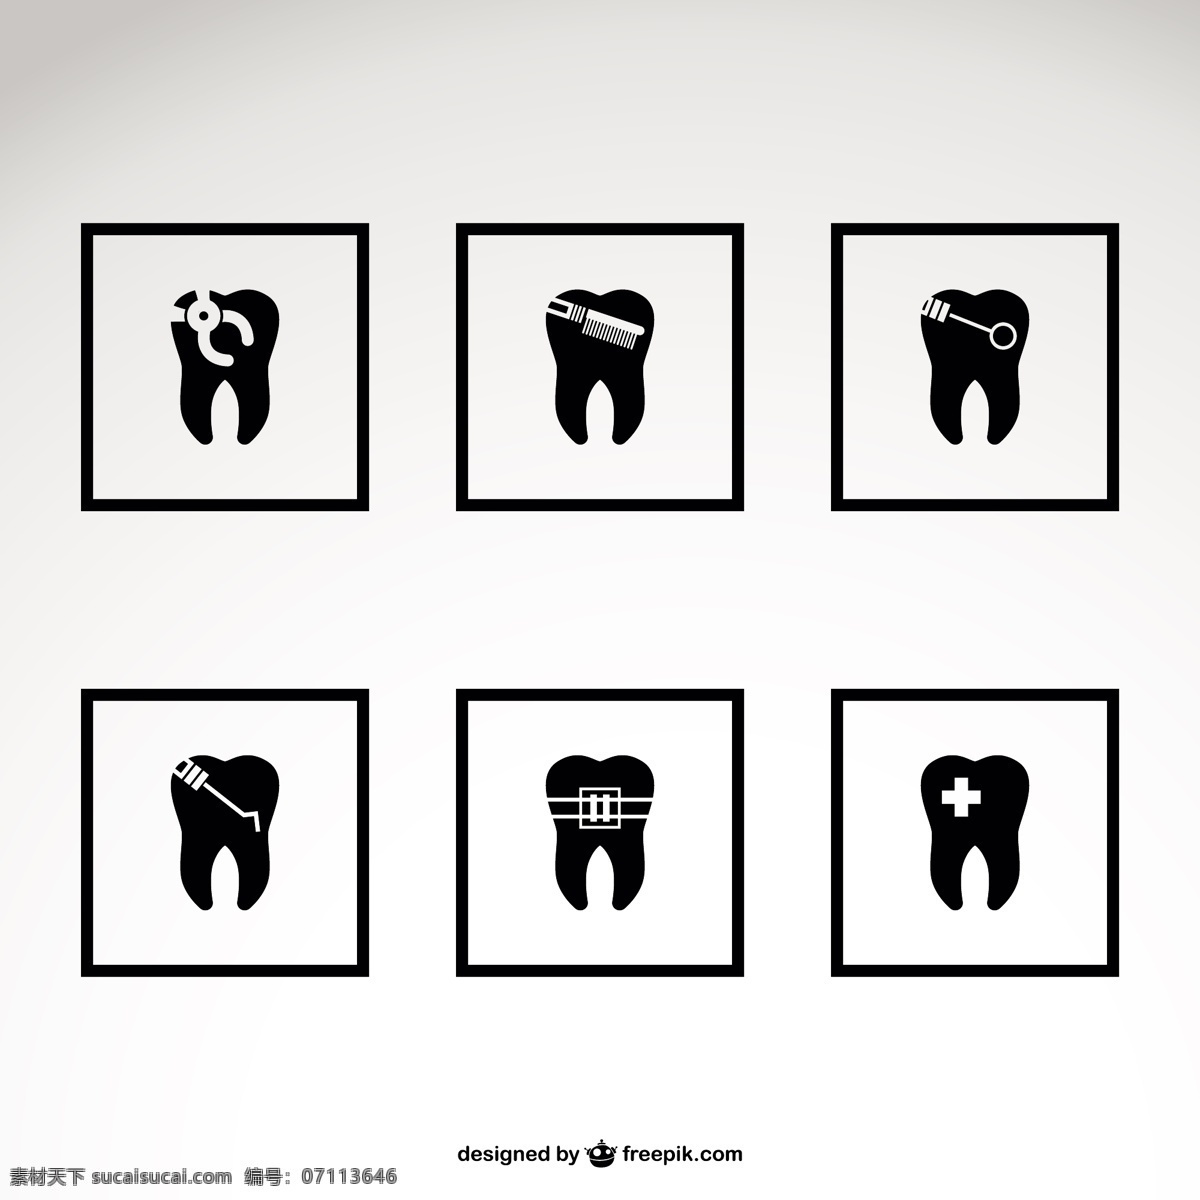 牙医的图标 标识 商业 图标 医疗 模板 健康 标志设计 平面 布局 黑色 牙齿 口腔 牙医 平面设计 白色